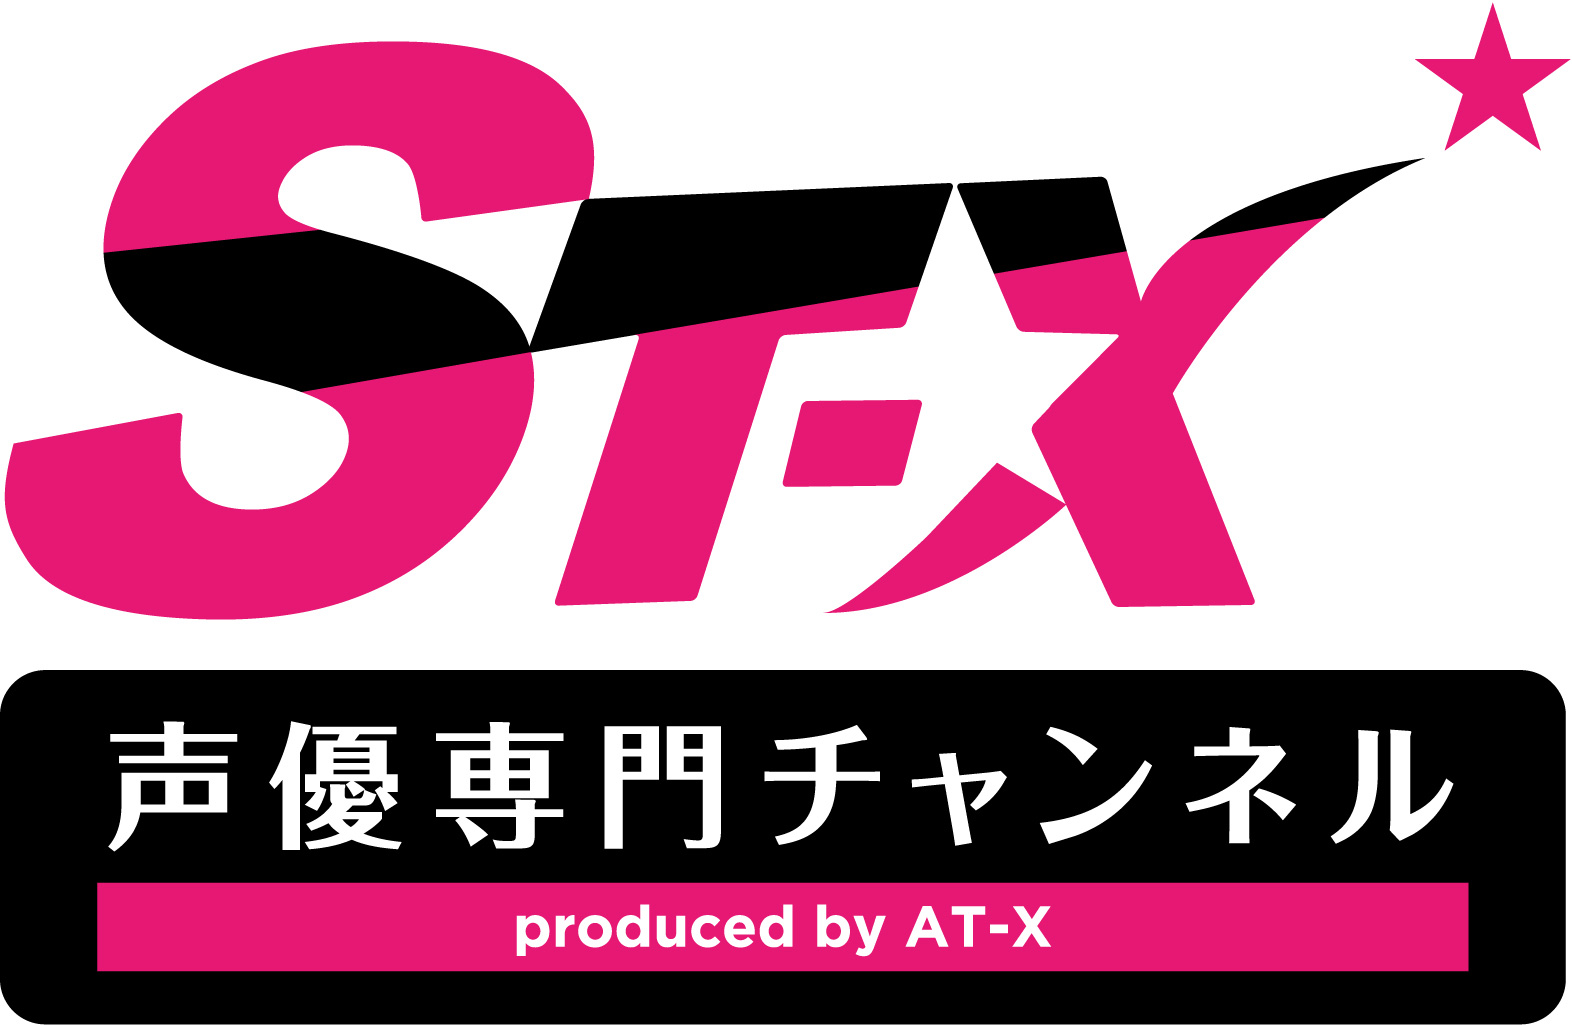 声優専門チャンネル St X が スカパー オンデマンド で10月に開局 月額1080円で見放題 Itmedia News